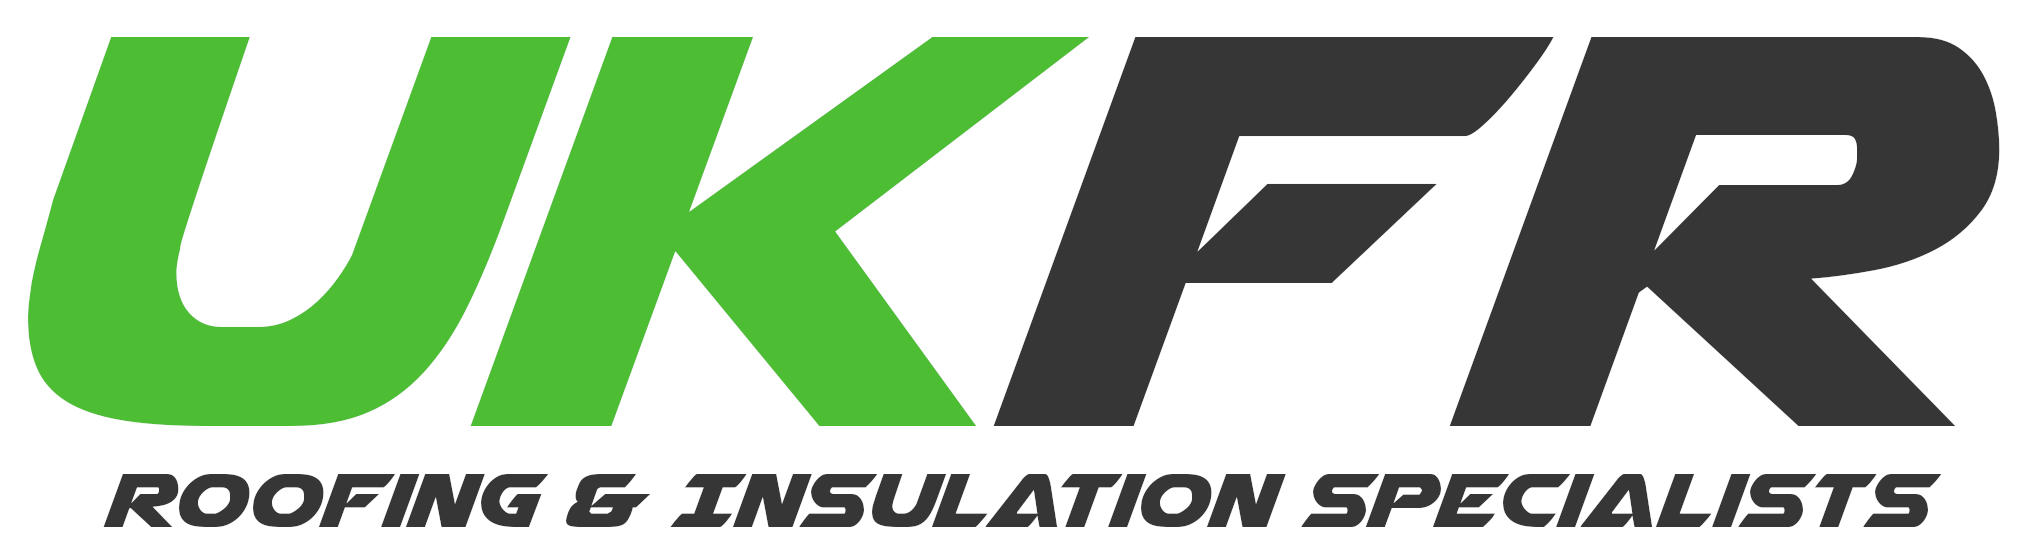 UKFR Green Logo